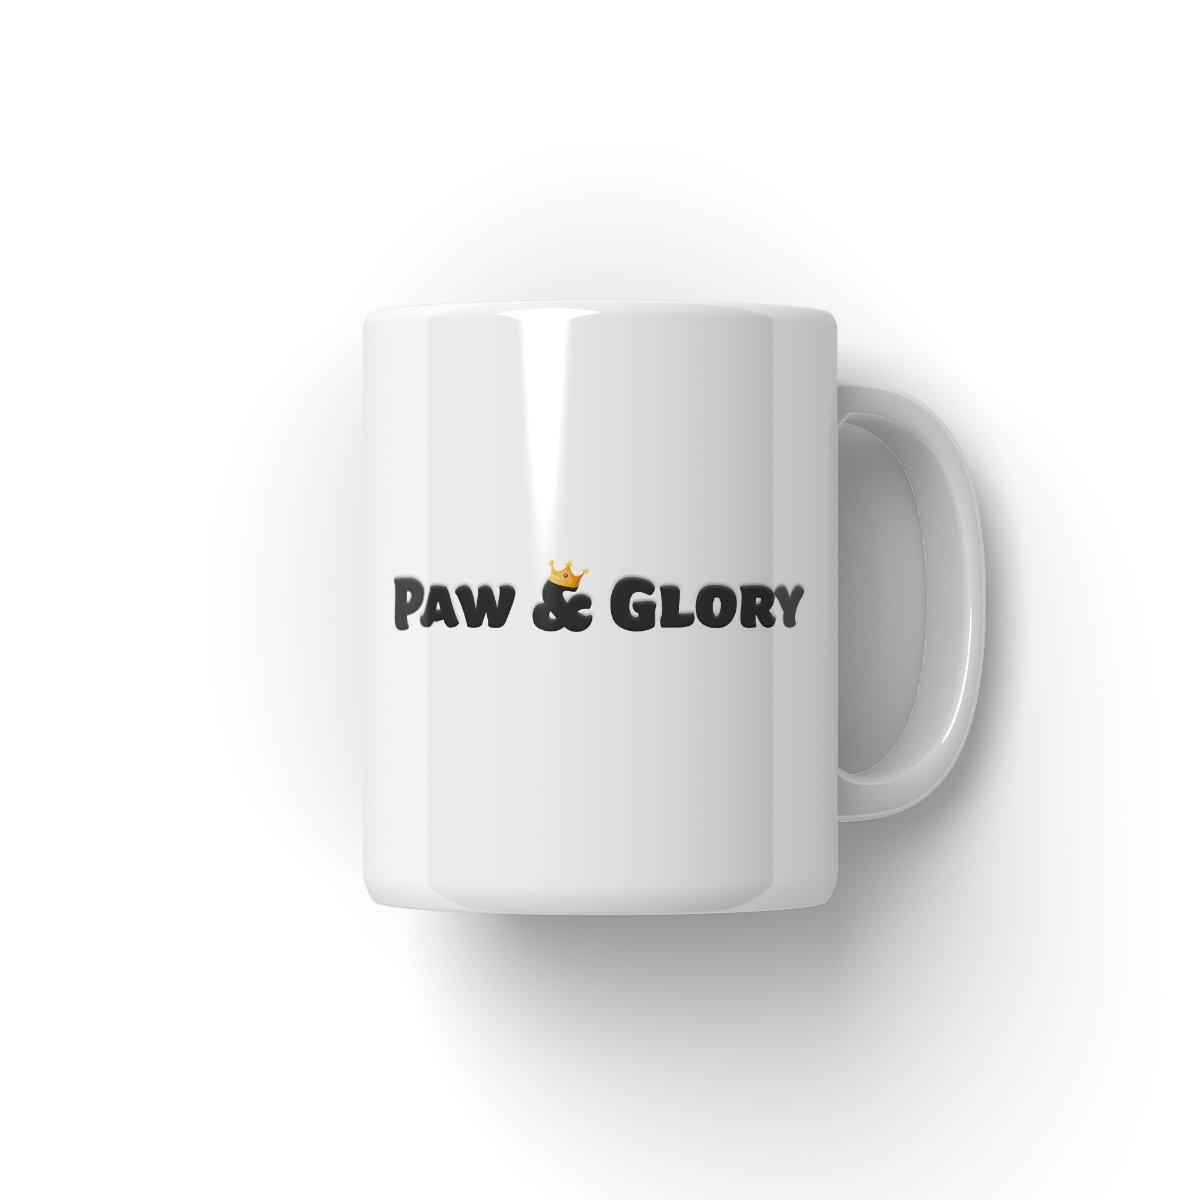 Paw & Glory, pawandglory, personalised pet mugs, personalised mugs with dogs, personalised mugs with dogs, personalized mugs with dogs, custom mug with cats, personalized dog mug, Pet Portraits Mug,